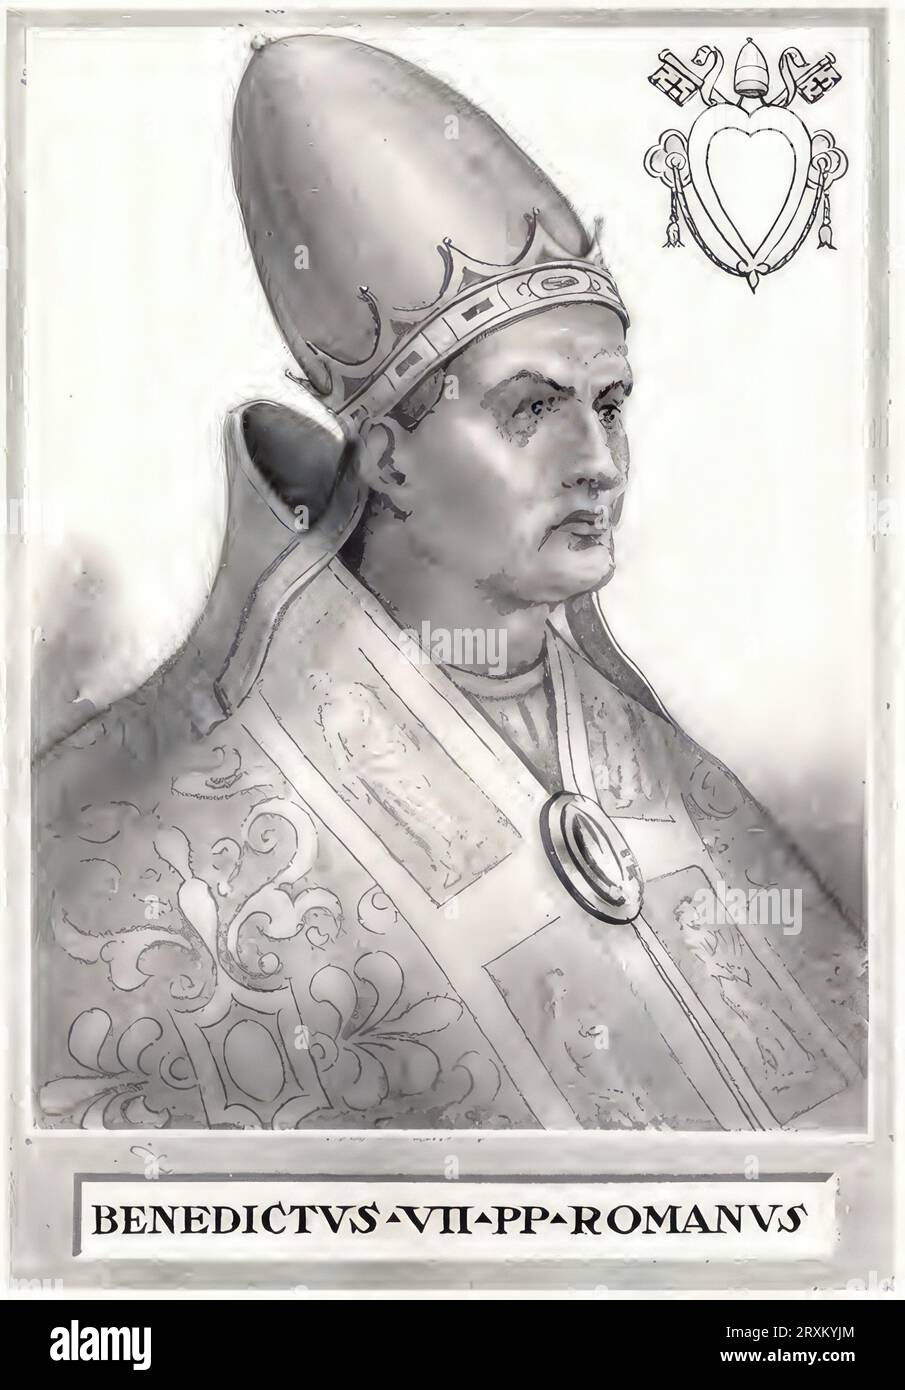 Benedikt VII. (geboren in Rom, verstorben 10. Juli 983 in Rom) war Papst von 974 bis 983. Er war als Sohn Deodats der Enkel von Alberich II. von Spoleto und Neffe Johannes’ XII. Er wurde der vierte Papst aus dem Geschlecht der Grafen von Tusculum, Historisch, digital restaurierte Reproduktion von einer Vorlage aus dem 19. Jahrhundert  /  Benedict VII (born in Rome, died July 10, 983 in Rome) was pope from 974 to 983, the son of Deodat, grandson of Alberic II of Spoleto and nephew of John XII. He became the fourth pope from the dynasty of the Counts of Tusculum, Historical, digitally restored r Stock Photo